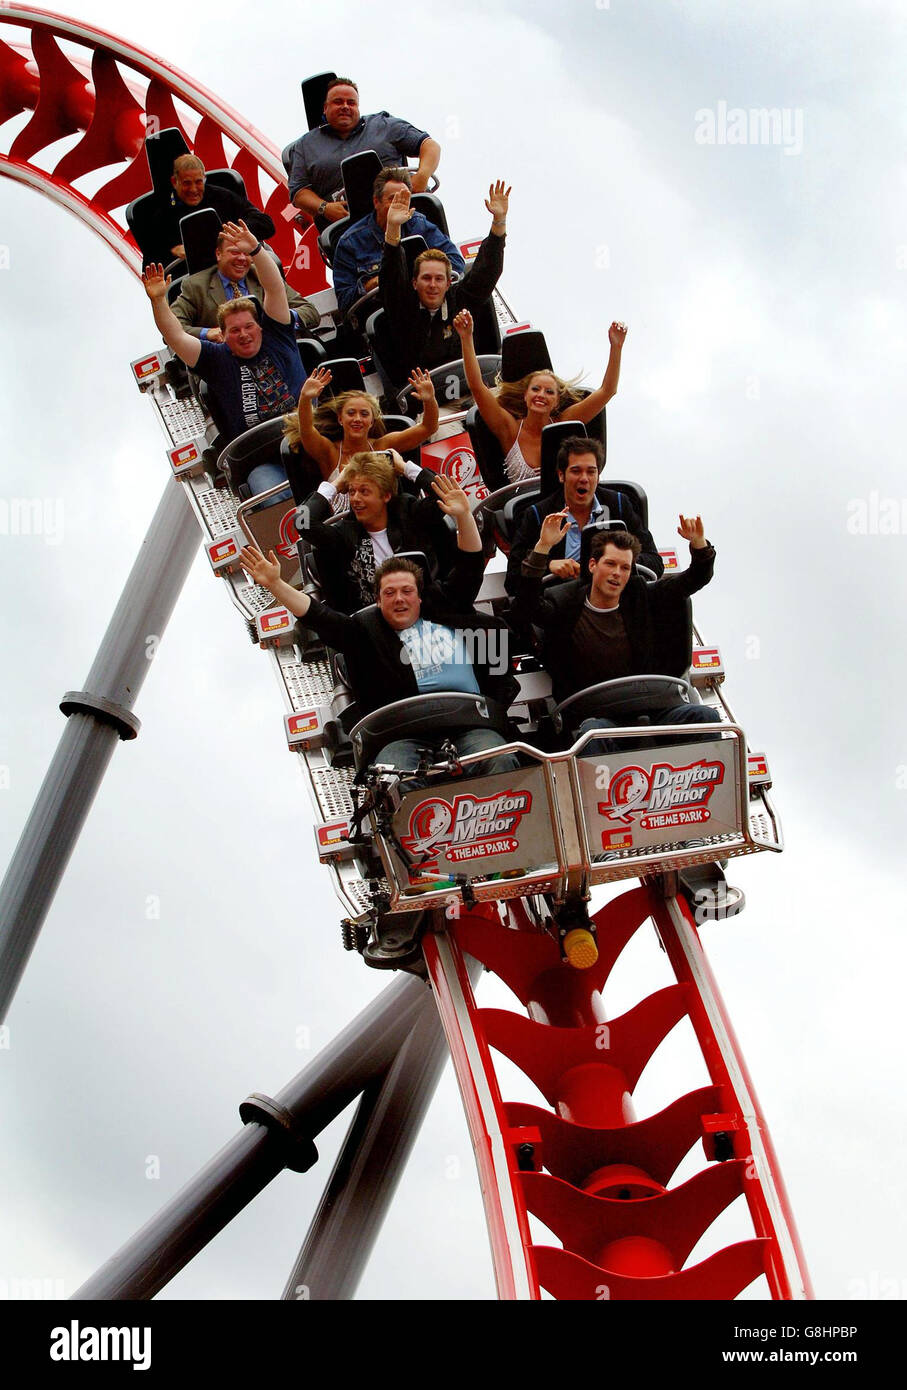 3 Million Rollercoaster G Force, die erste Fahrt auf der Welt, die ein revolutionäres Hüftrückhaltesystem für Adrenalin-Junkies aller Größen verwendet. Stockfoto